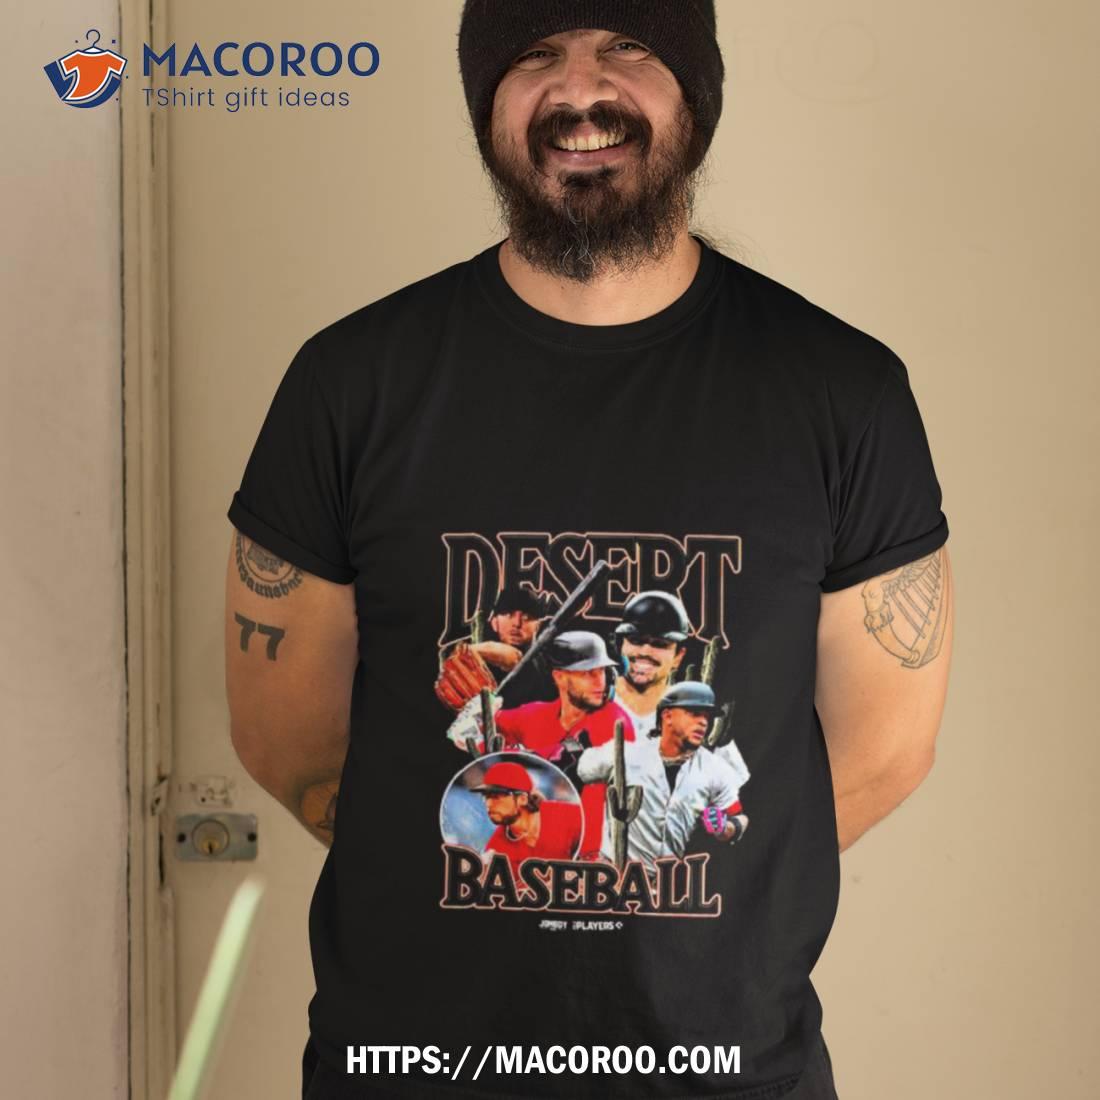 Dbacks Legends Arizona Diamondbacks T-Shirt funny shirts, gift